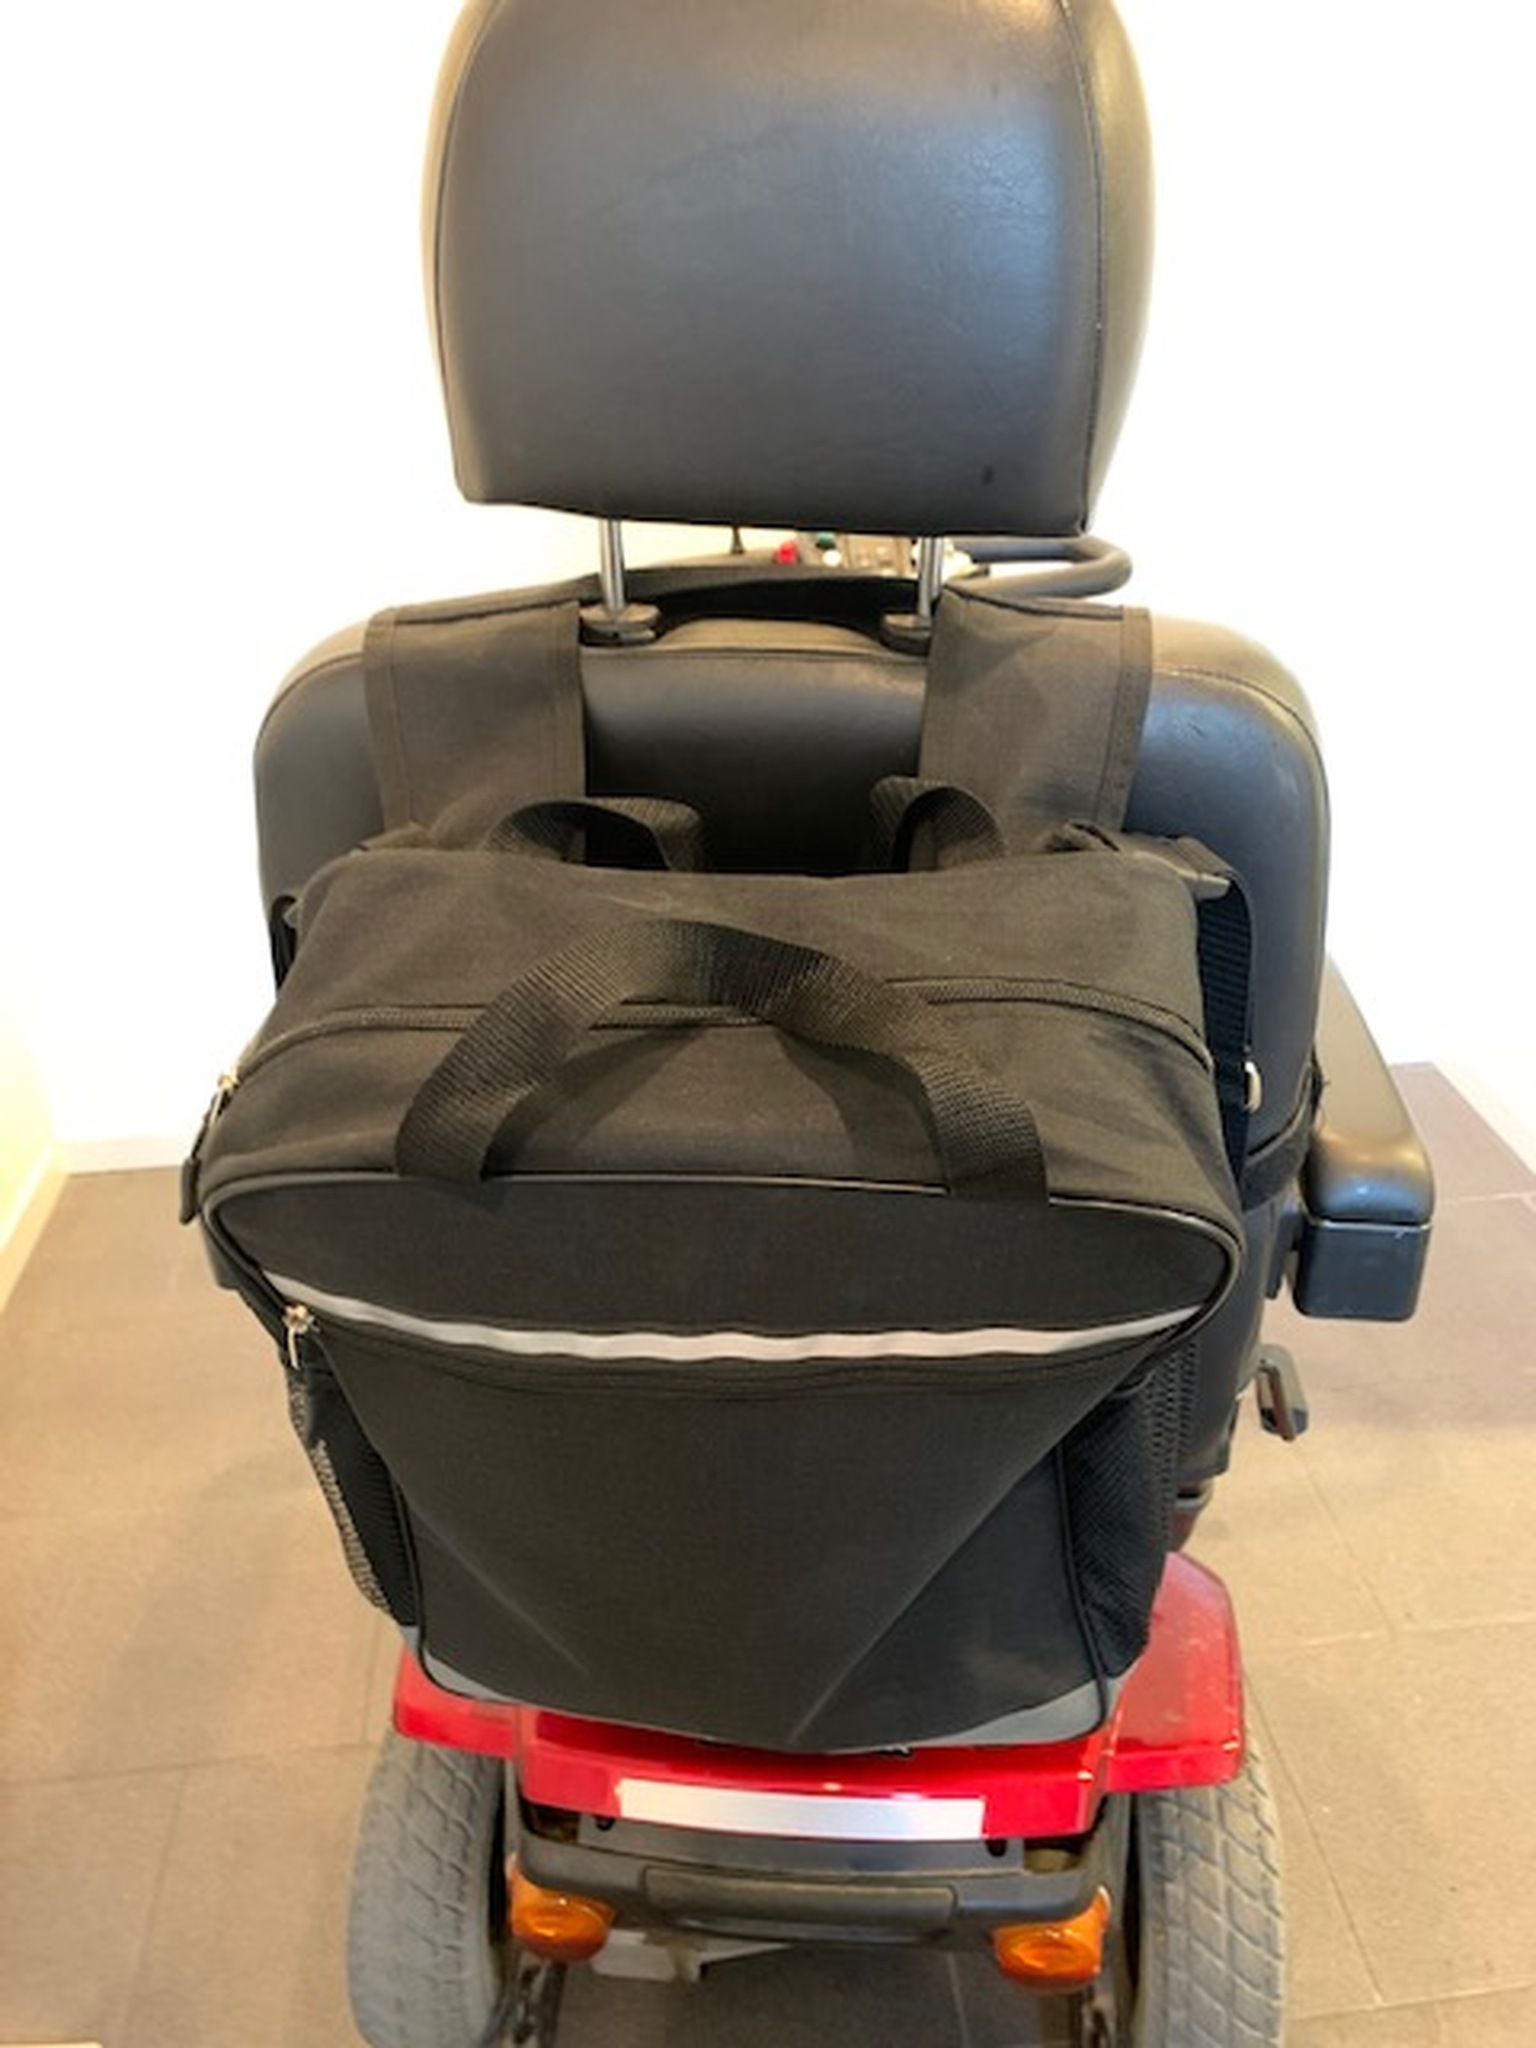 väska tillbehör rullstol promenadscooter